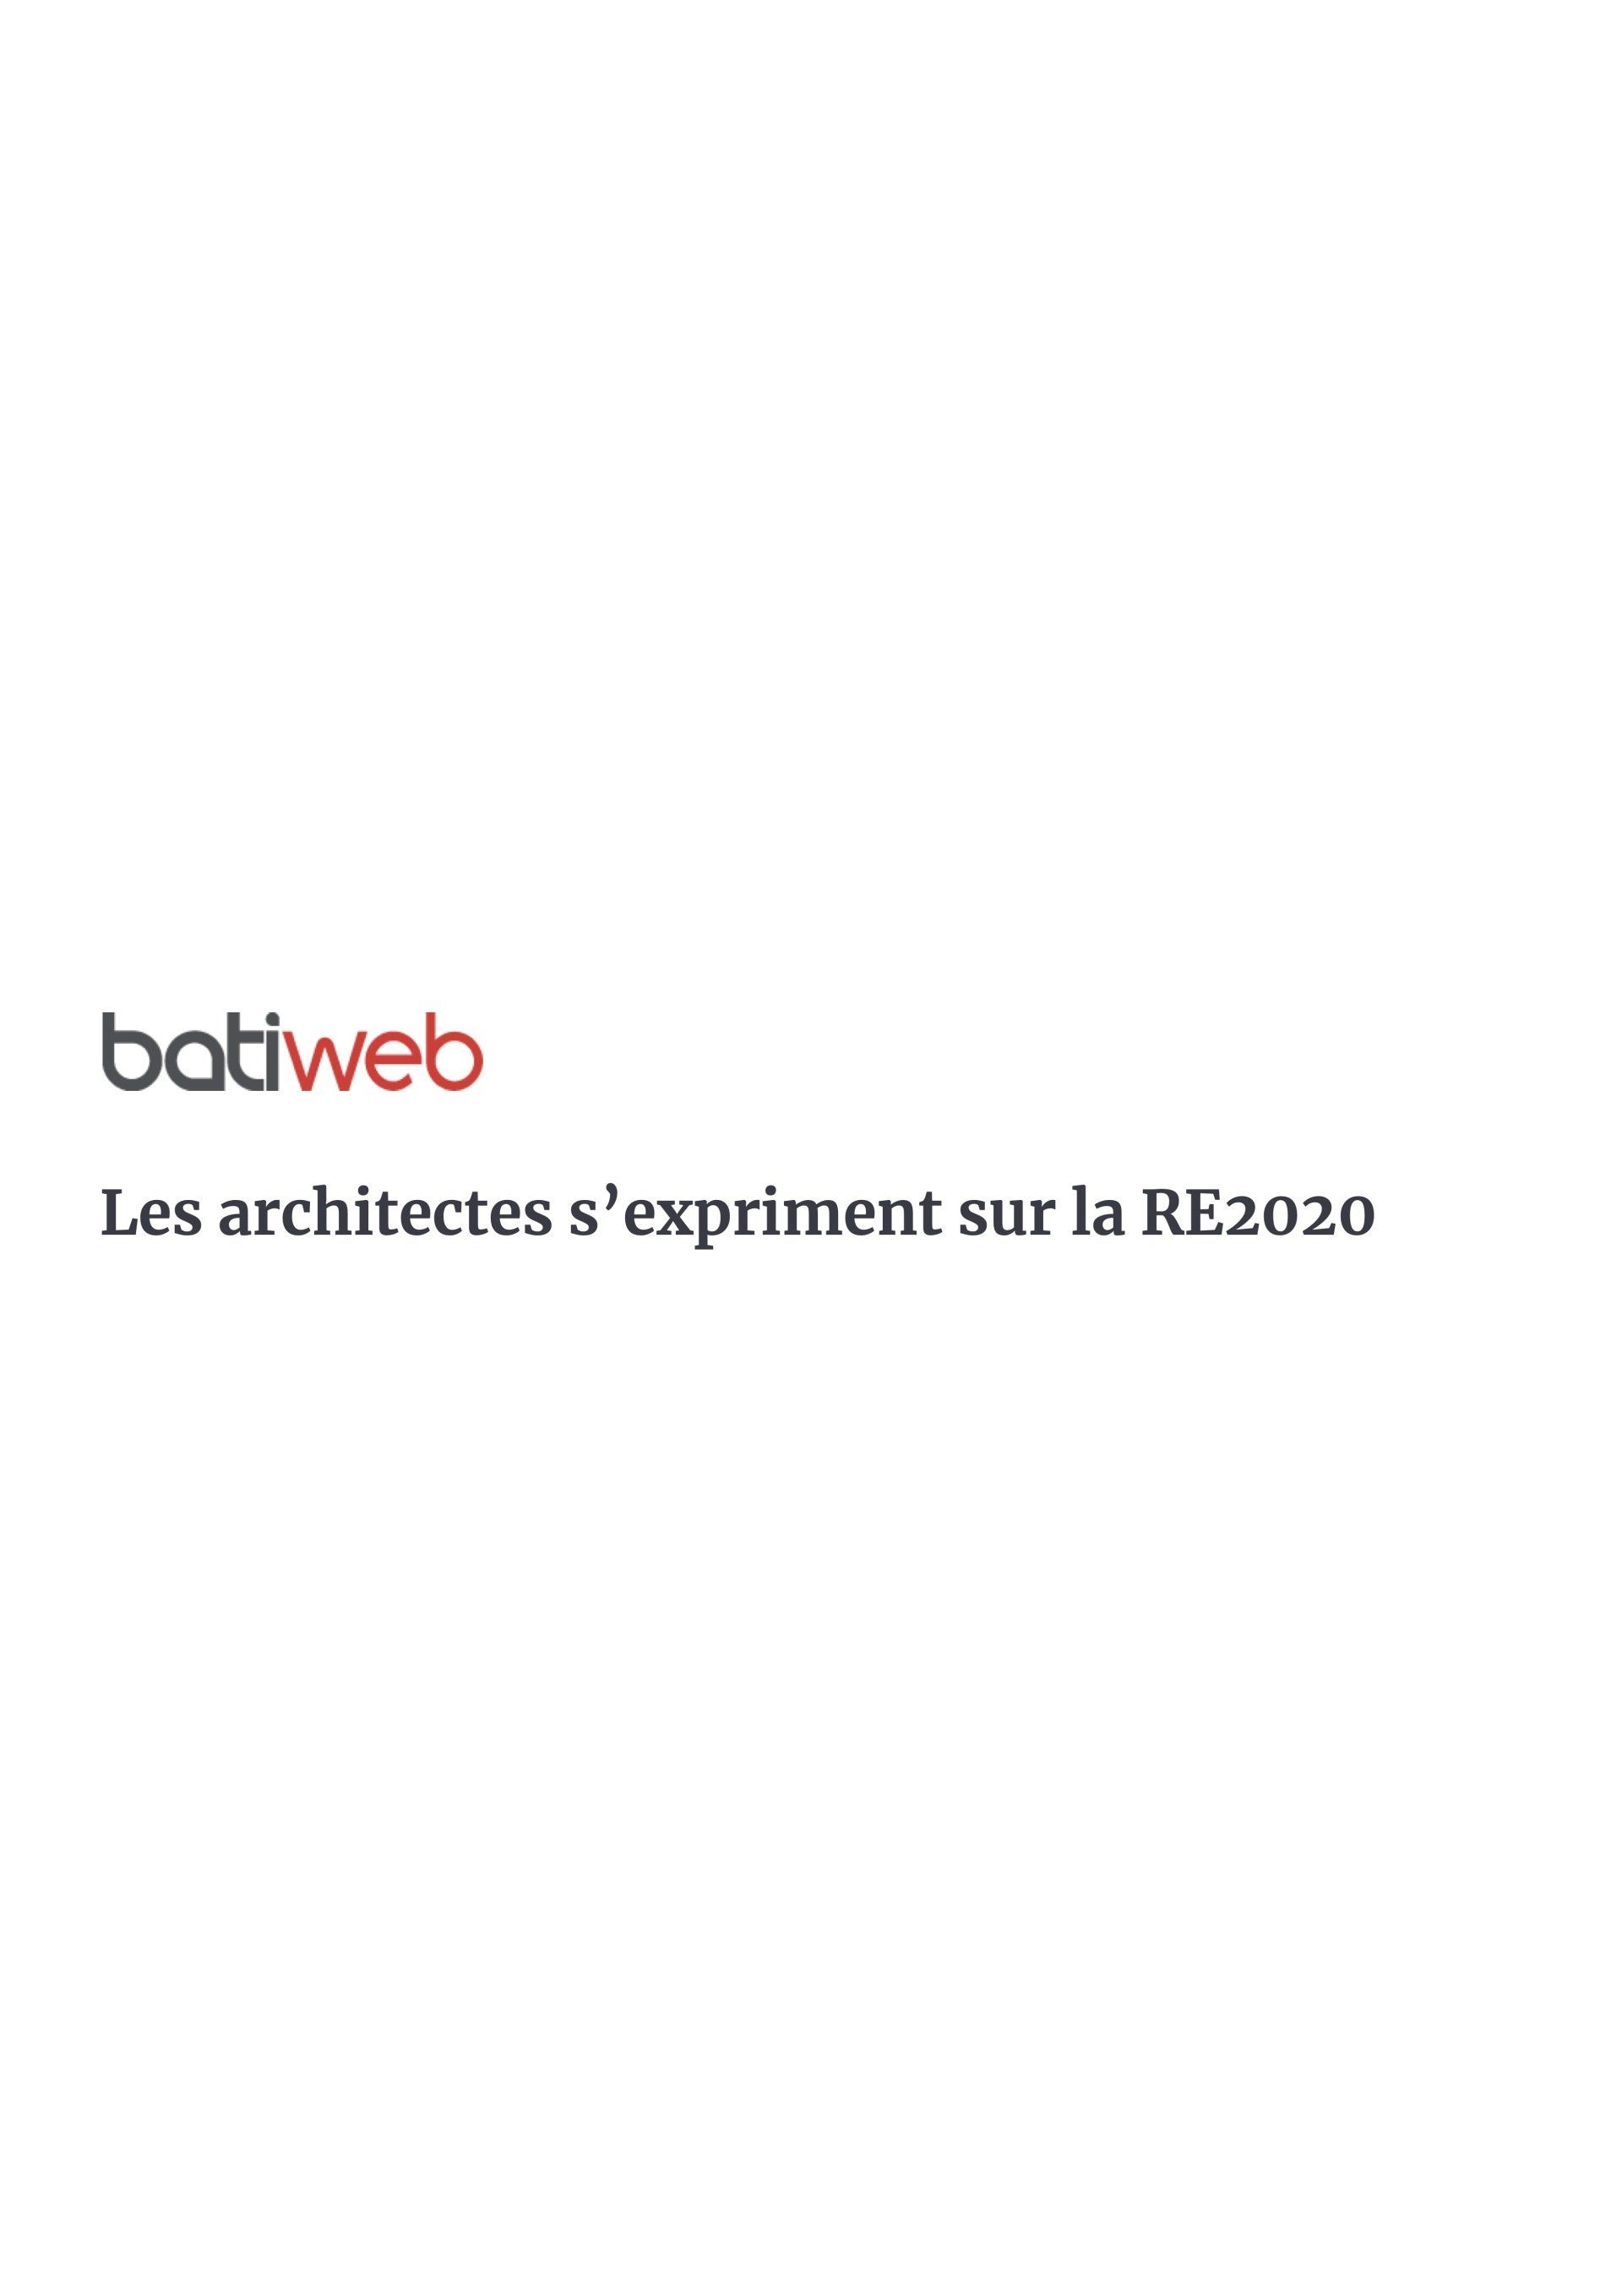 Publication | Les architectes s'expriment sur la RE2020